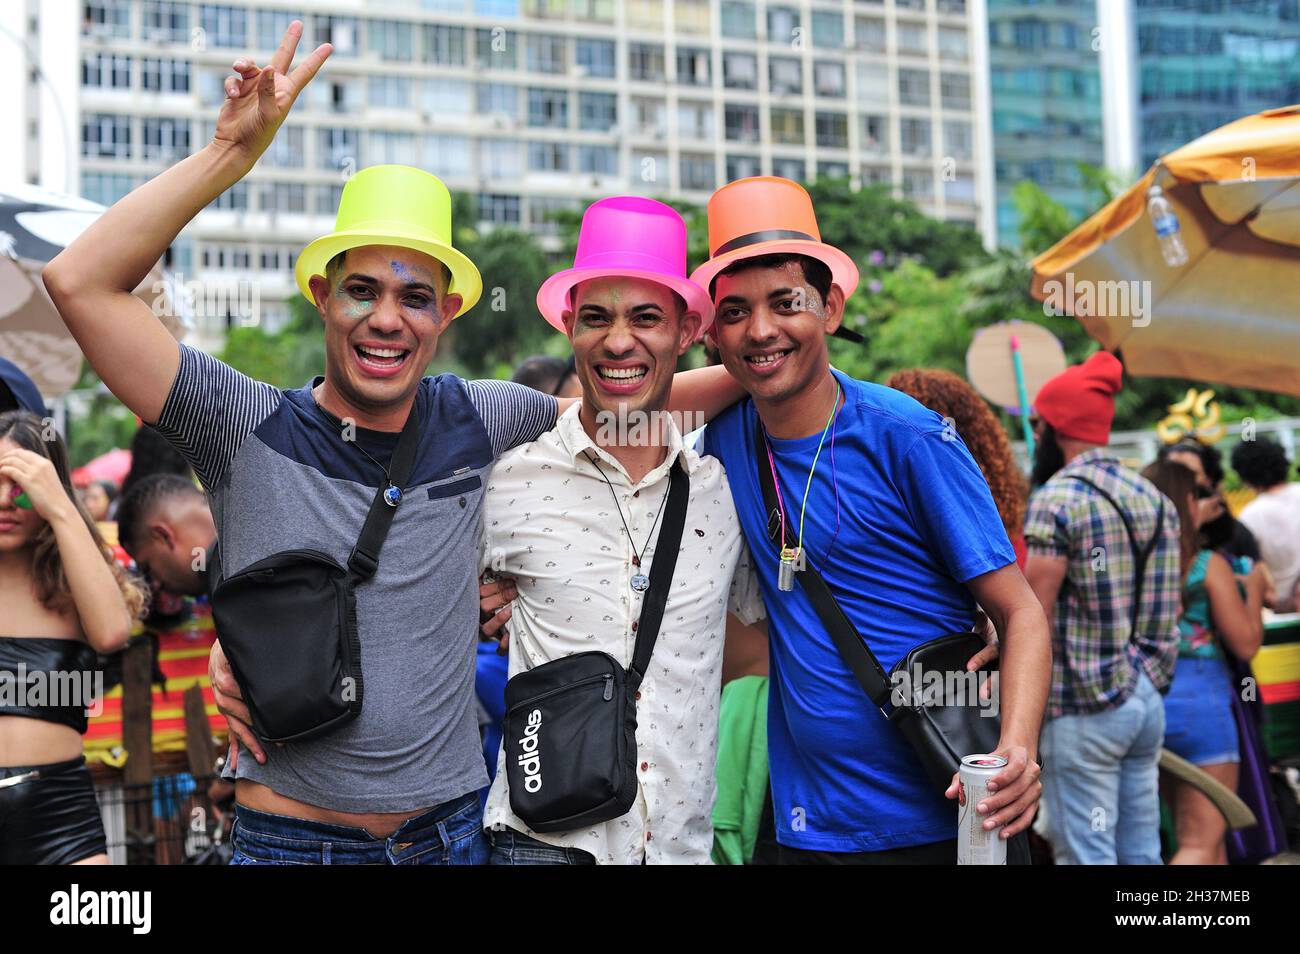 Americhe, Brasile – 22 febbraio 2020: Amici in costume sorridono per la fotocamera durante una festa di strada di Carnevale che si tiene nel centro di Rio de Janeiro. Foto Stock